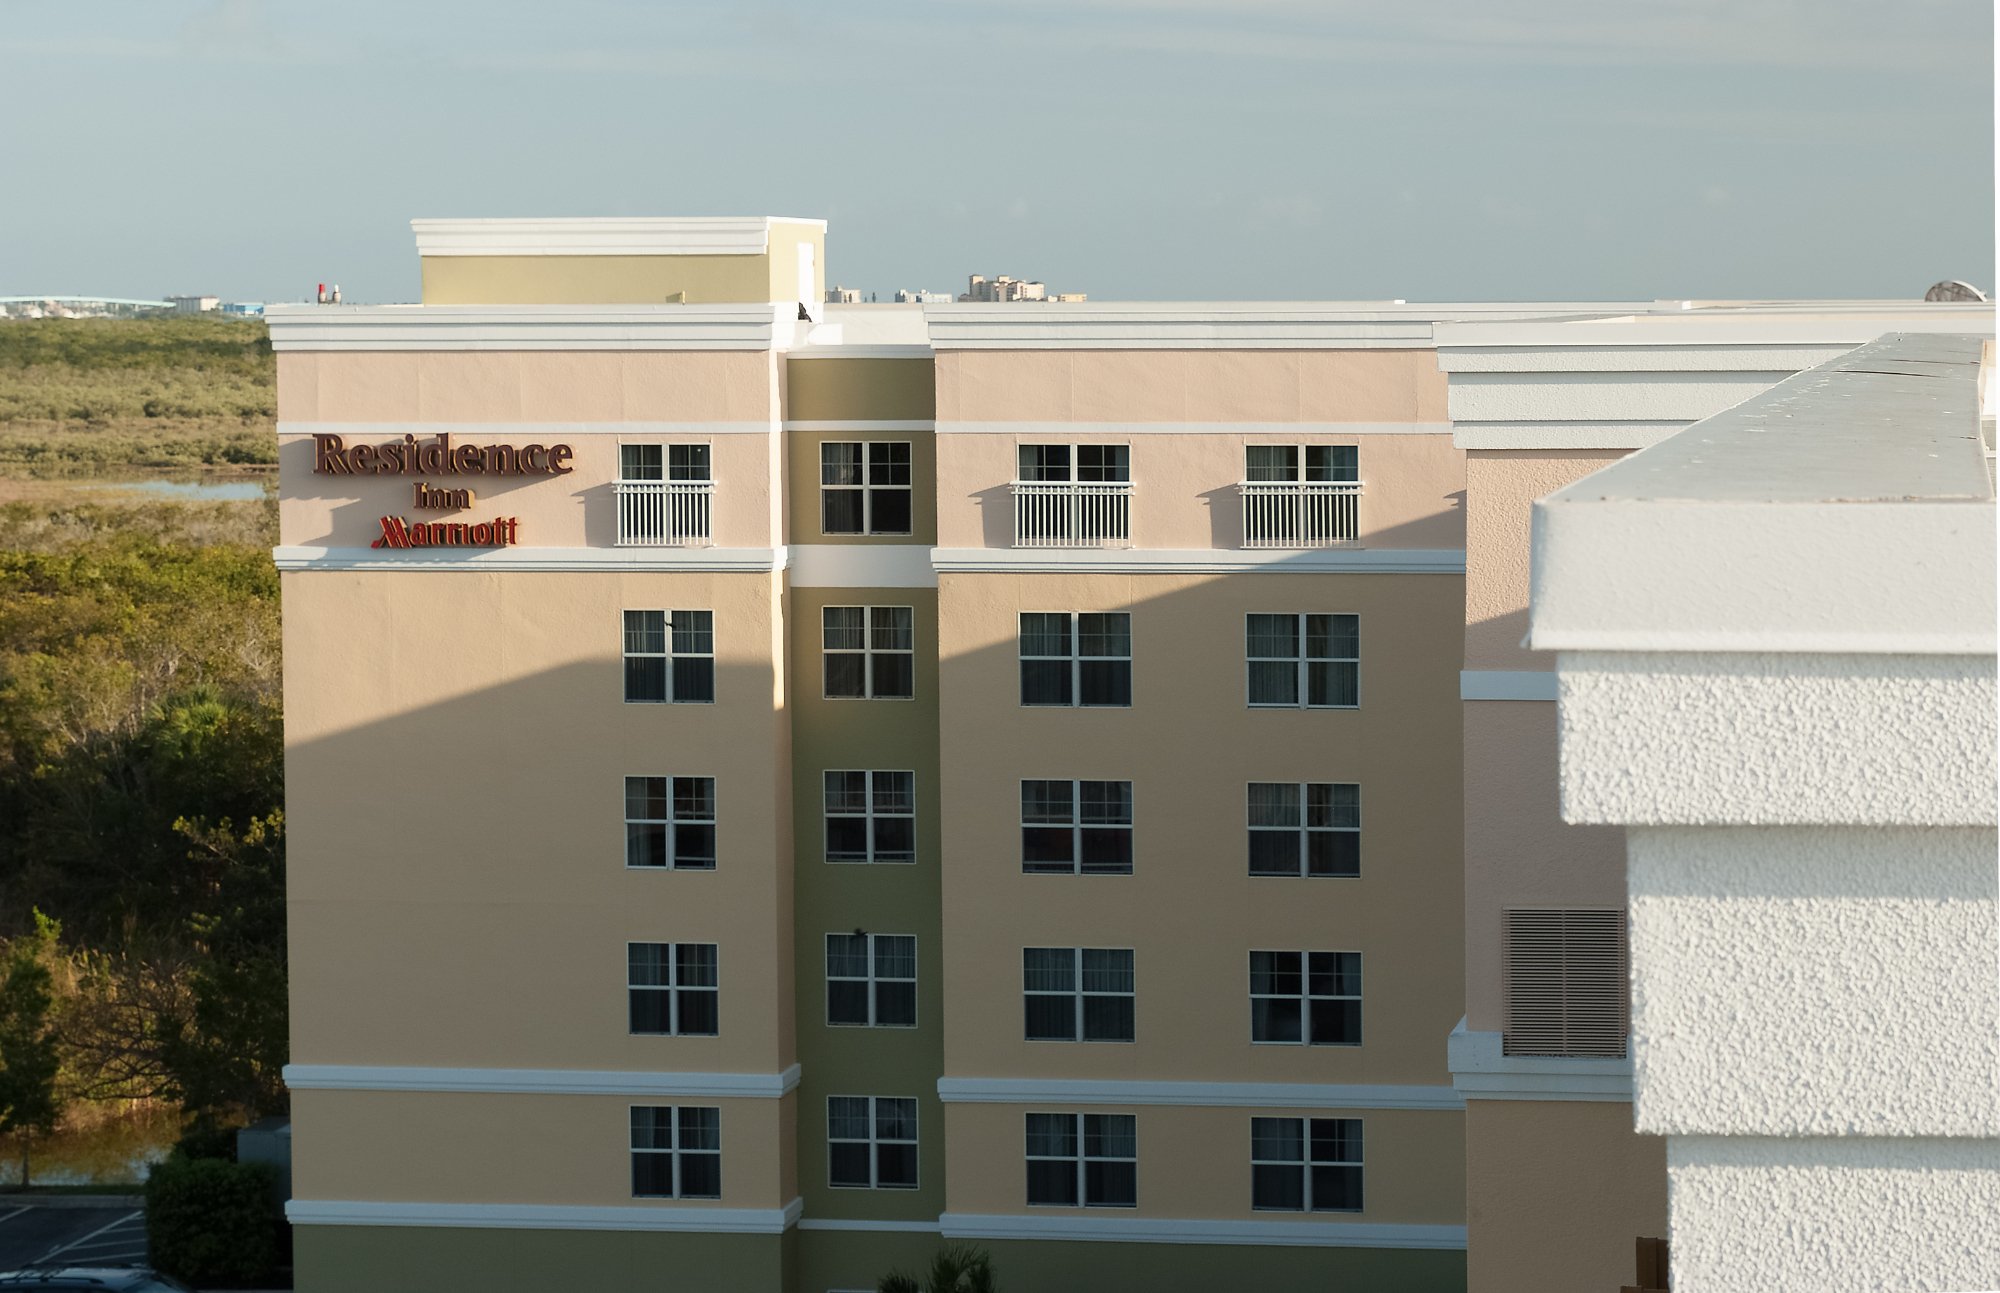 Photo of Residence Inn Fort Myers Sanibel, Fort Myers, FL